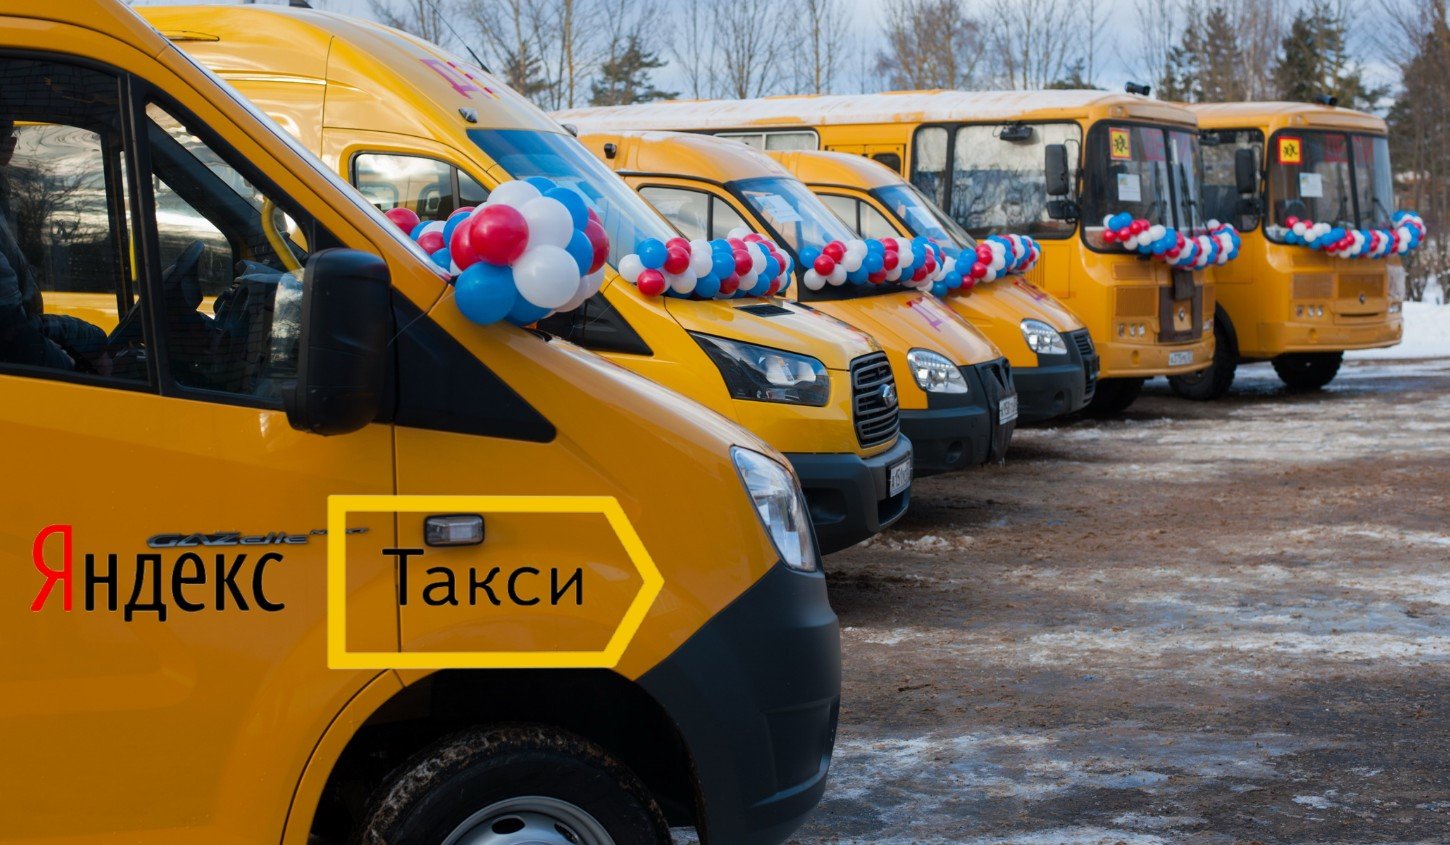 Маршрутное такси 22. Школьные автобусы в России. Общественный транспорт такси.